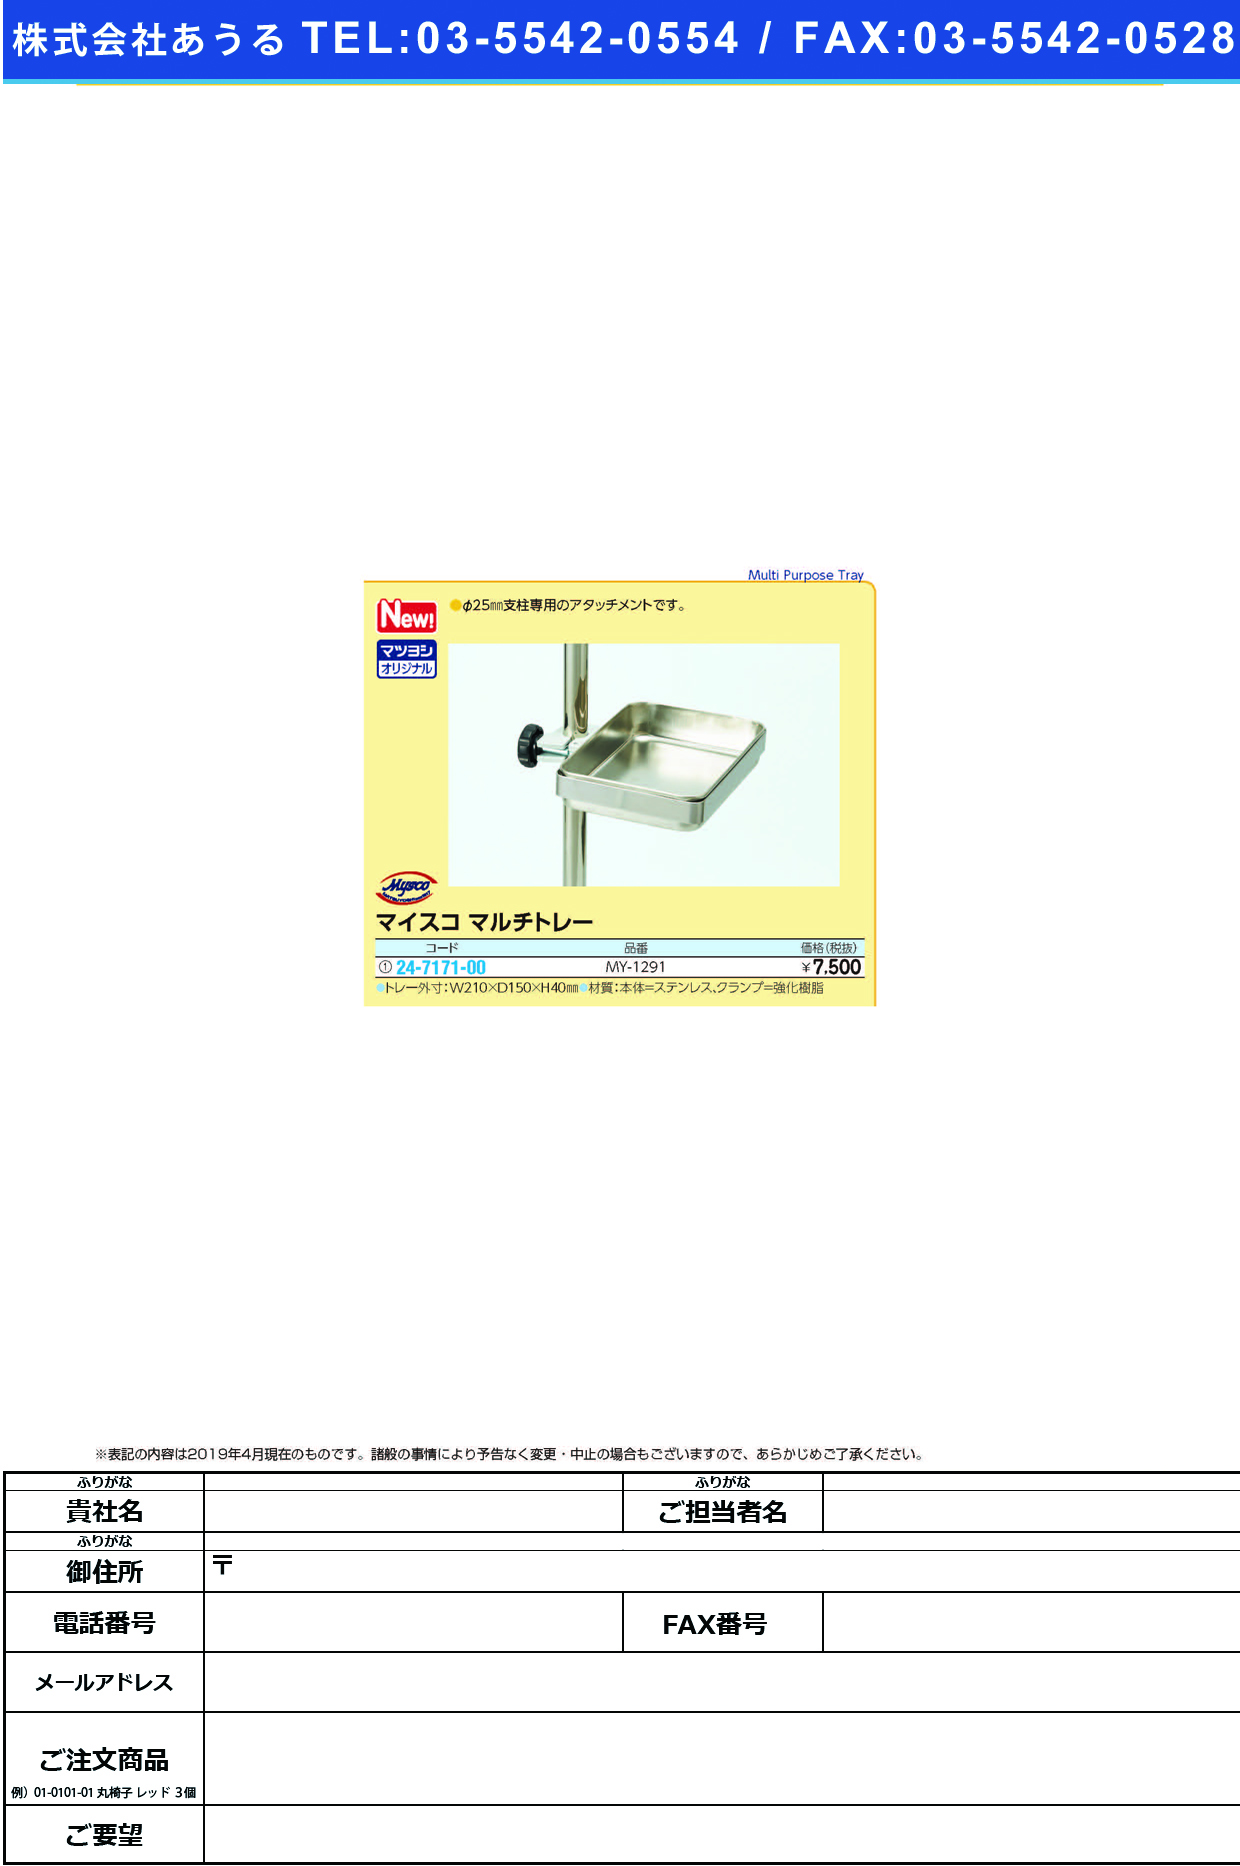 (24-7171-00)マイスコマルチトレーMY-1291 ﾏｲｽｺﾏﾙﾁﾄﾚｰ(松吉医科器械)【1個単位】【2019年カタログ商品】